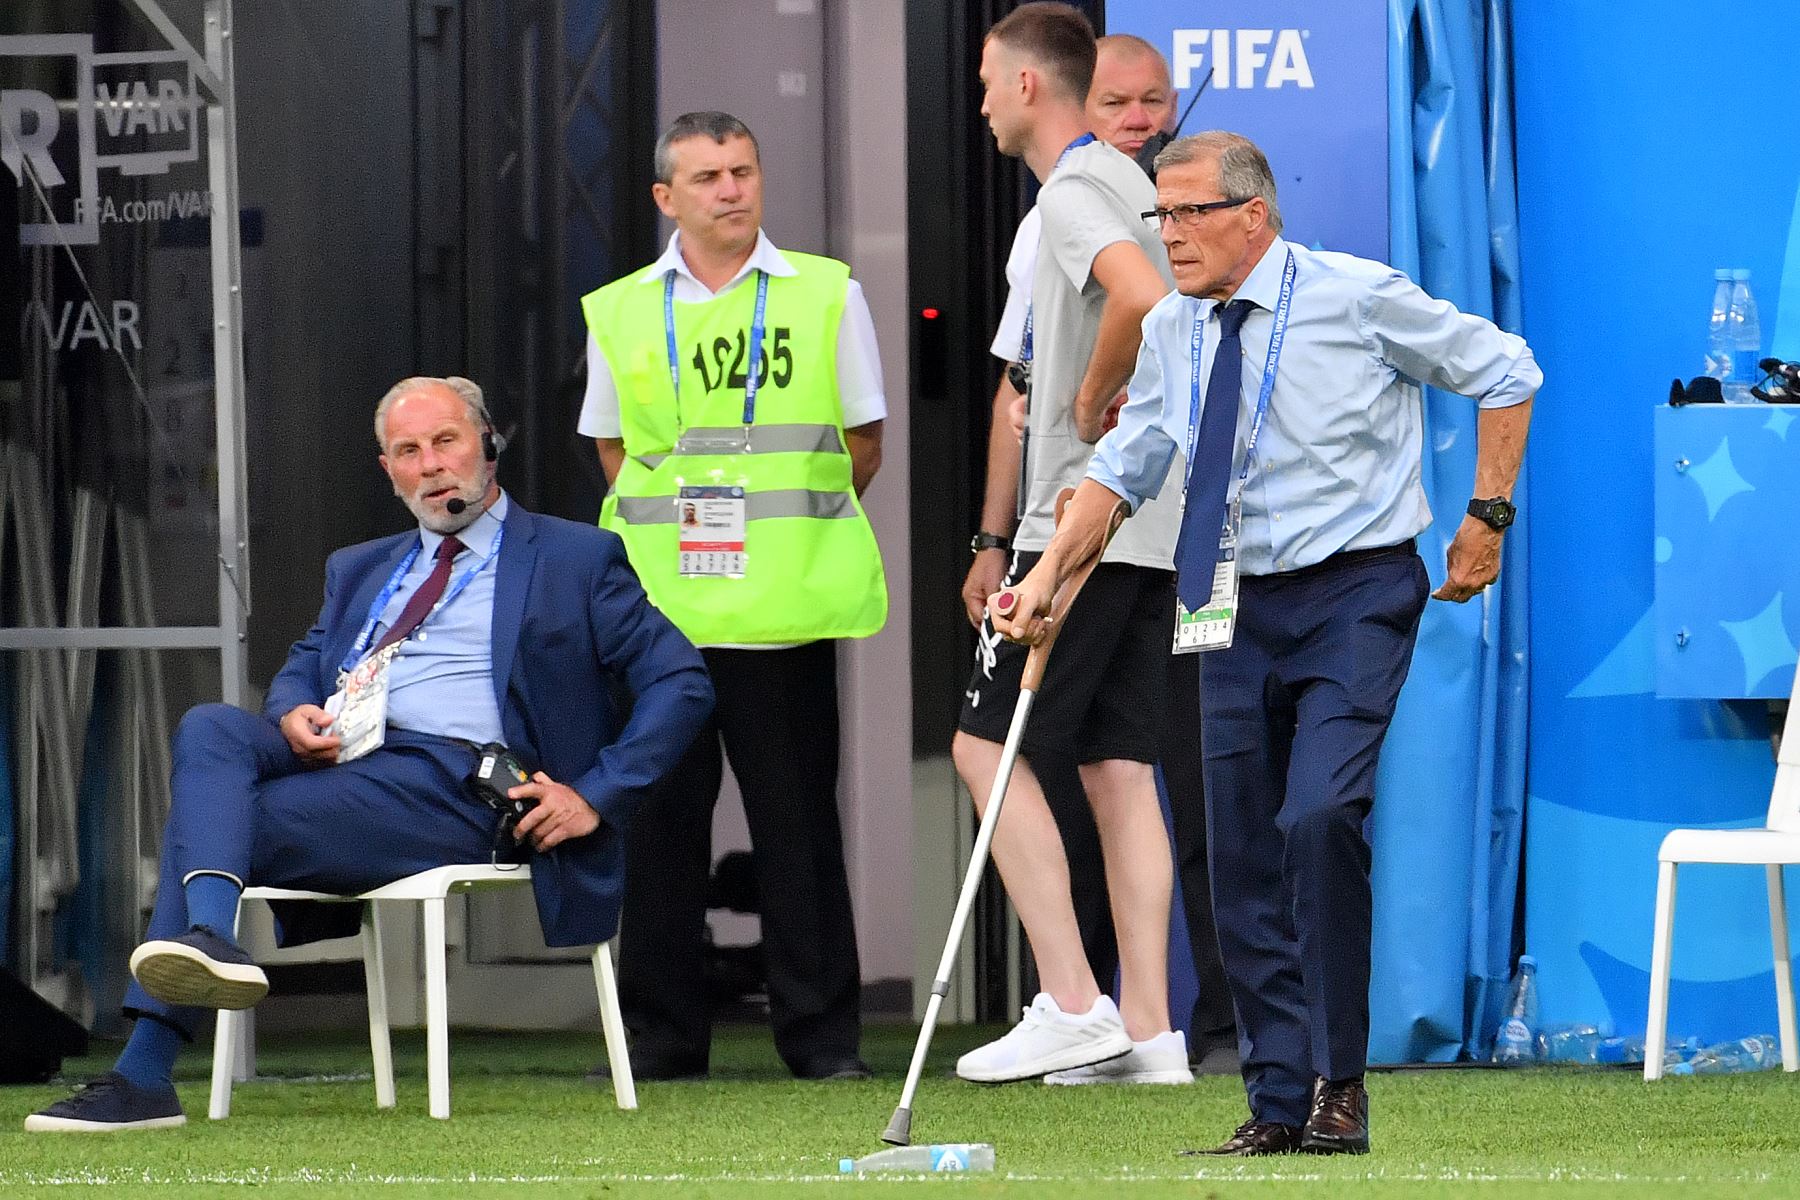 El entrenador uruguayo Oscar Washington Tabarez permanece en la banca durante el partido de fútbol del Grupo A de la Copa Mundial Rusia 2018 entre Uruguay y Arabia Saudita en el Rostov Arena en Rostov-On-Don el 20 de junio de 2018.
 / AFP